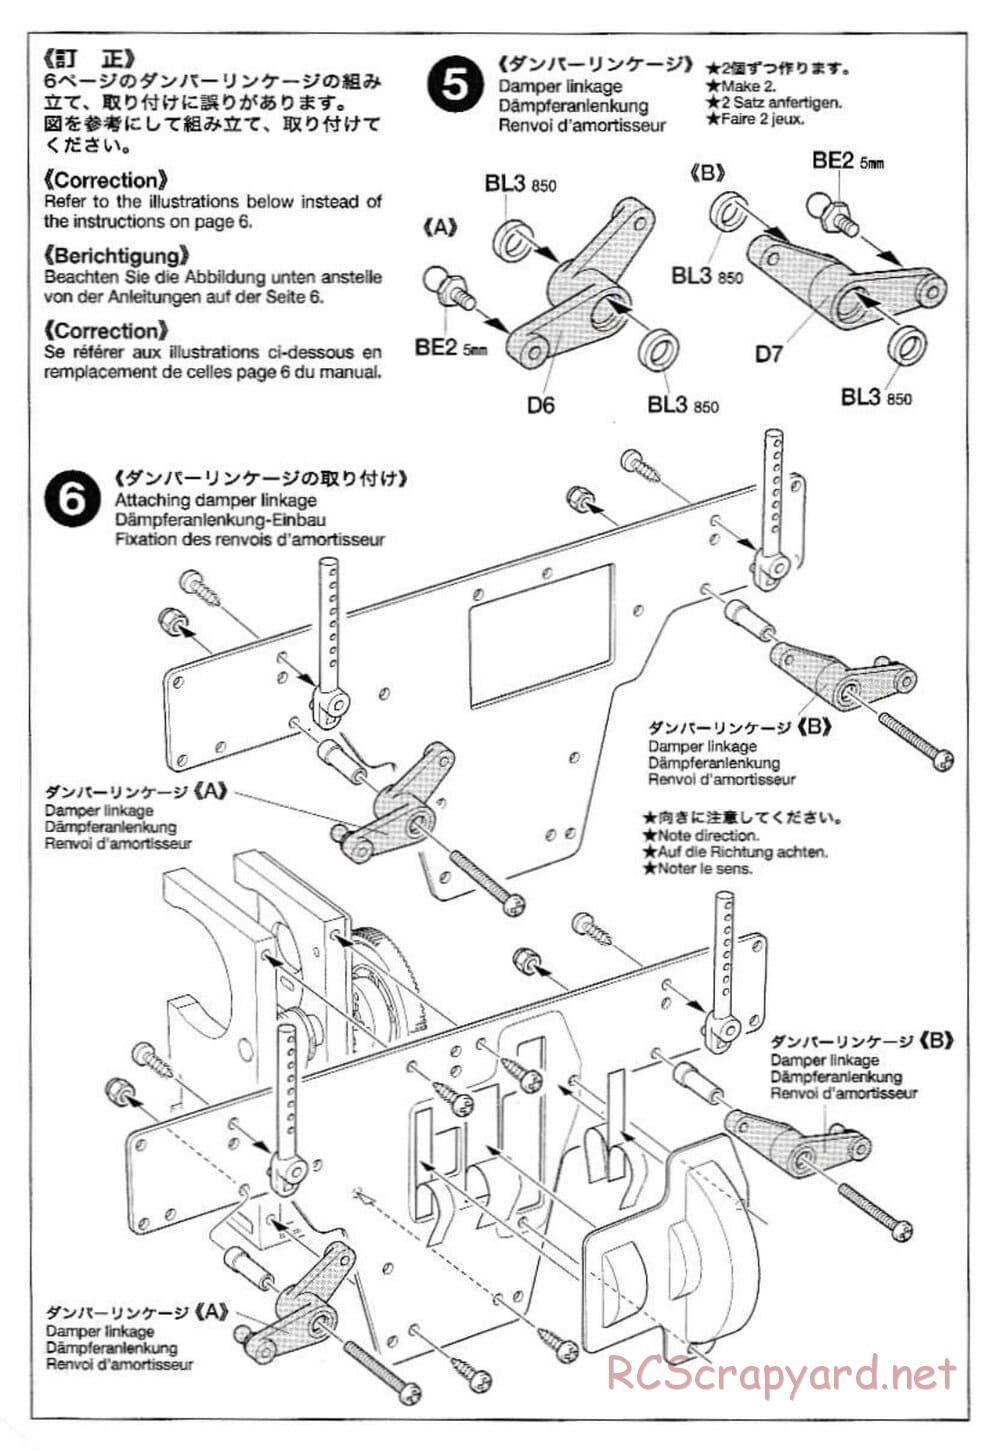 Tamiya - Rock Buster - TLT-1 Chassis - Manual - Page 33